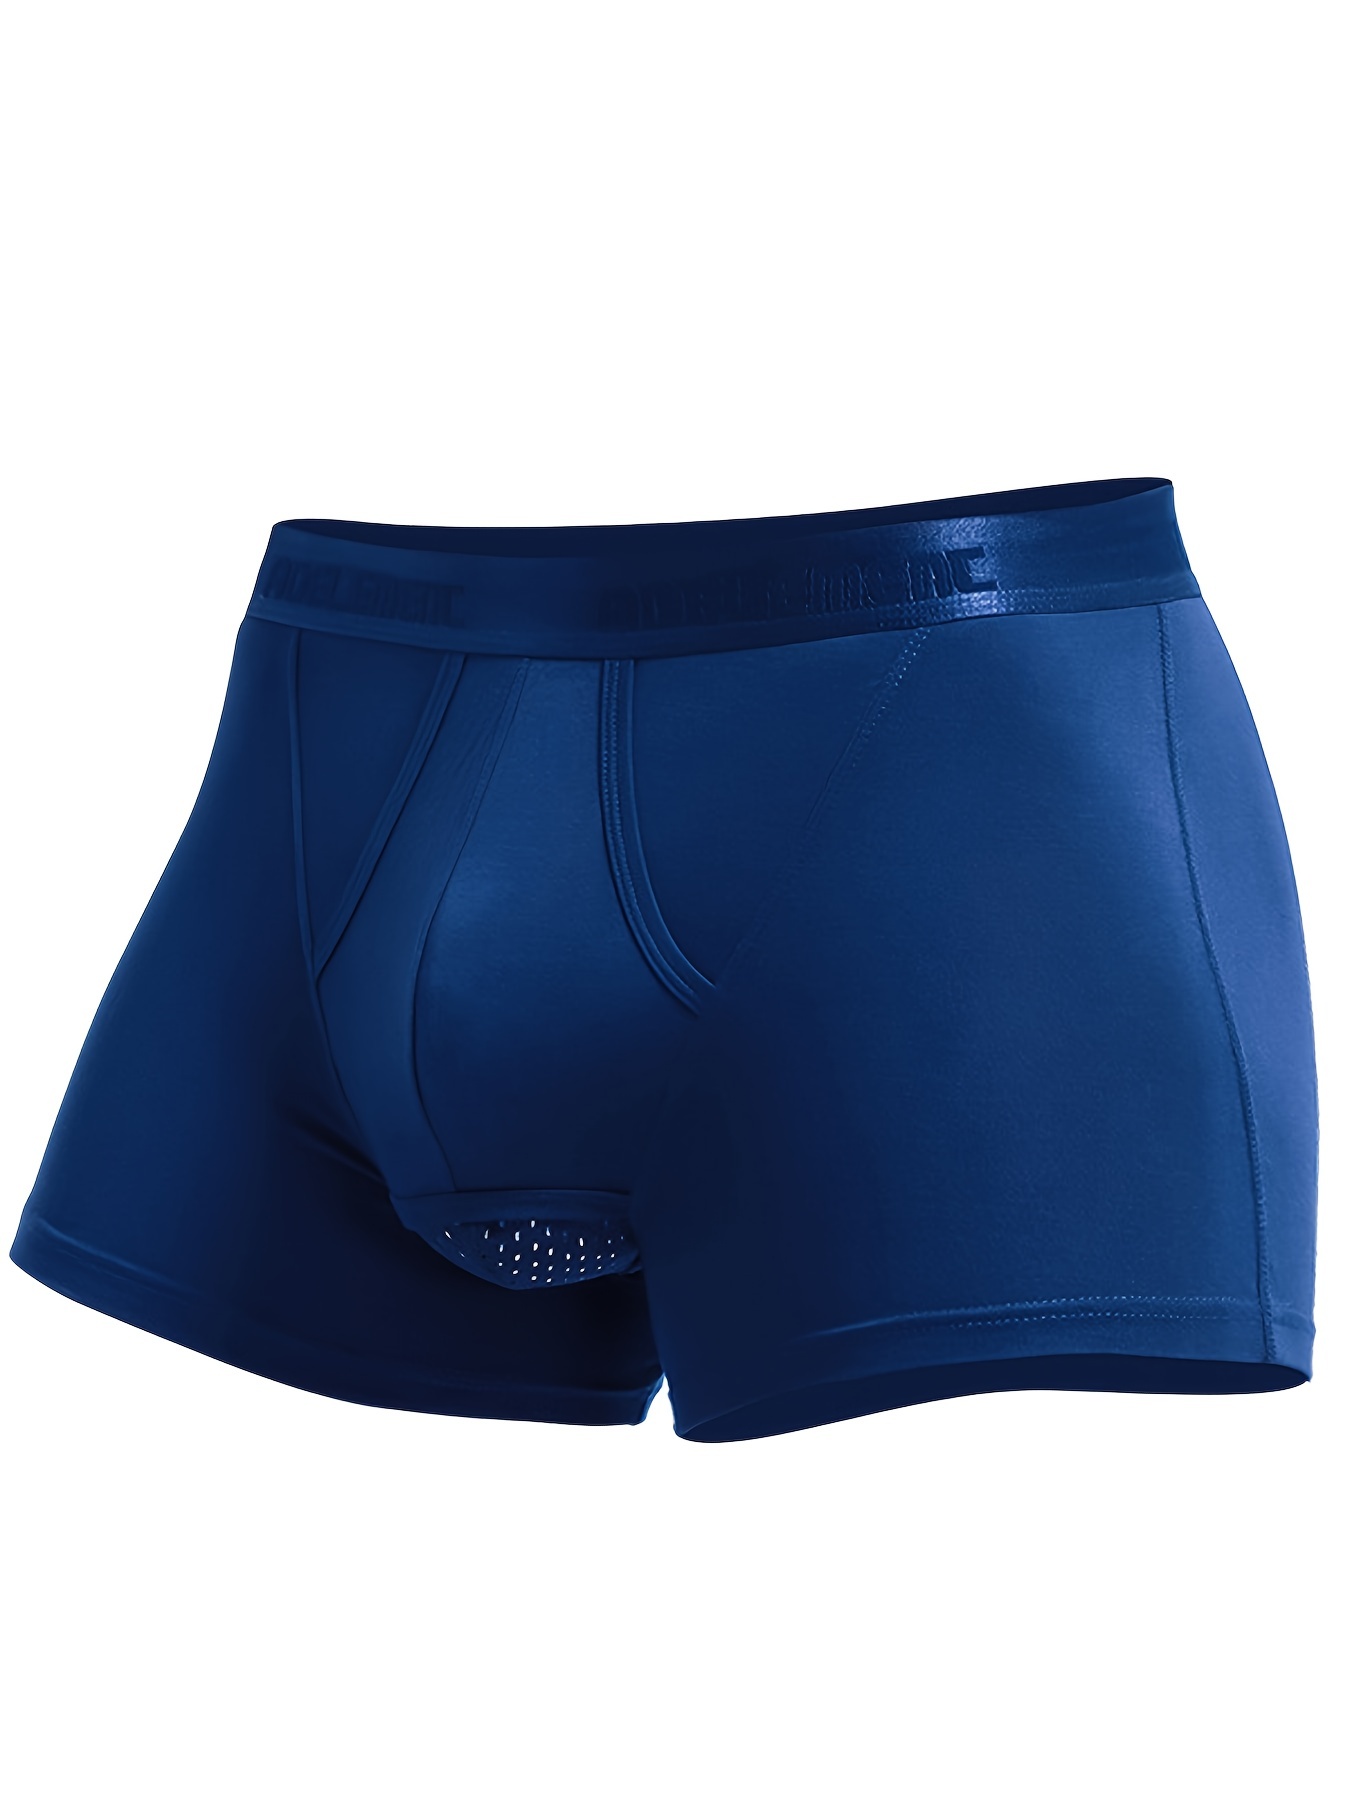 Men's Underwear Bulge Pouch Sheath Trunks Boxer Briefs Soft Shorts  Underpants